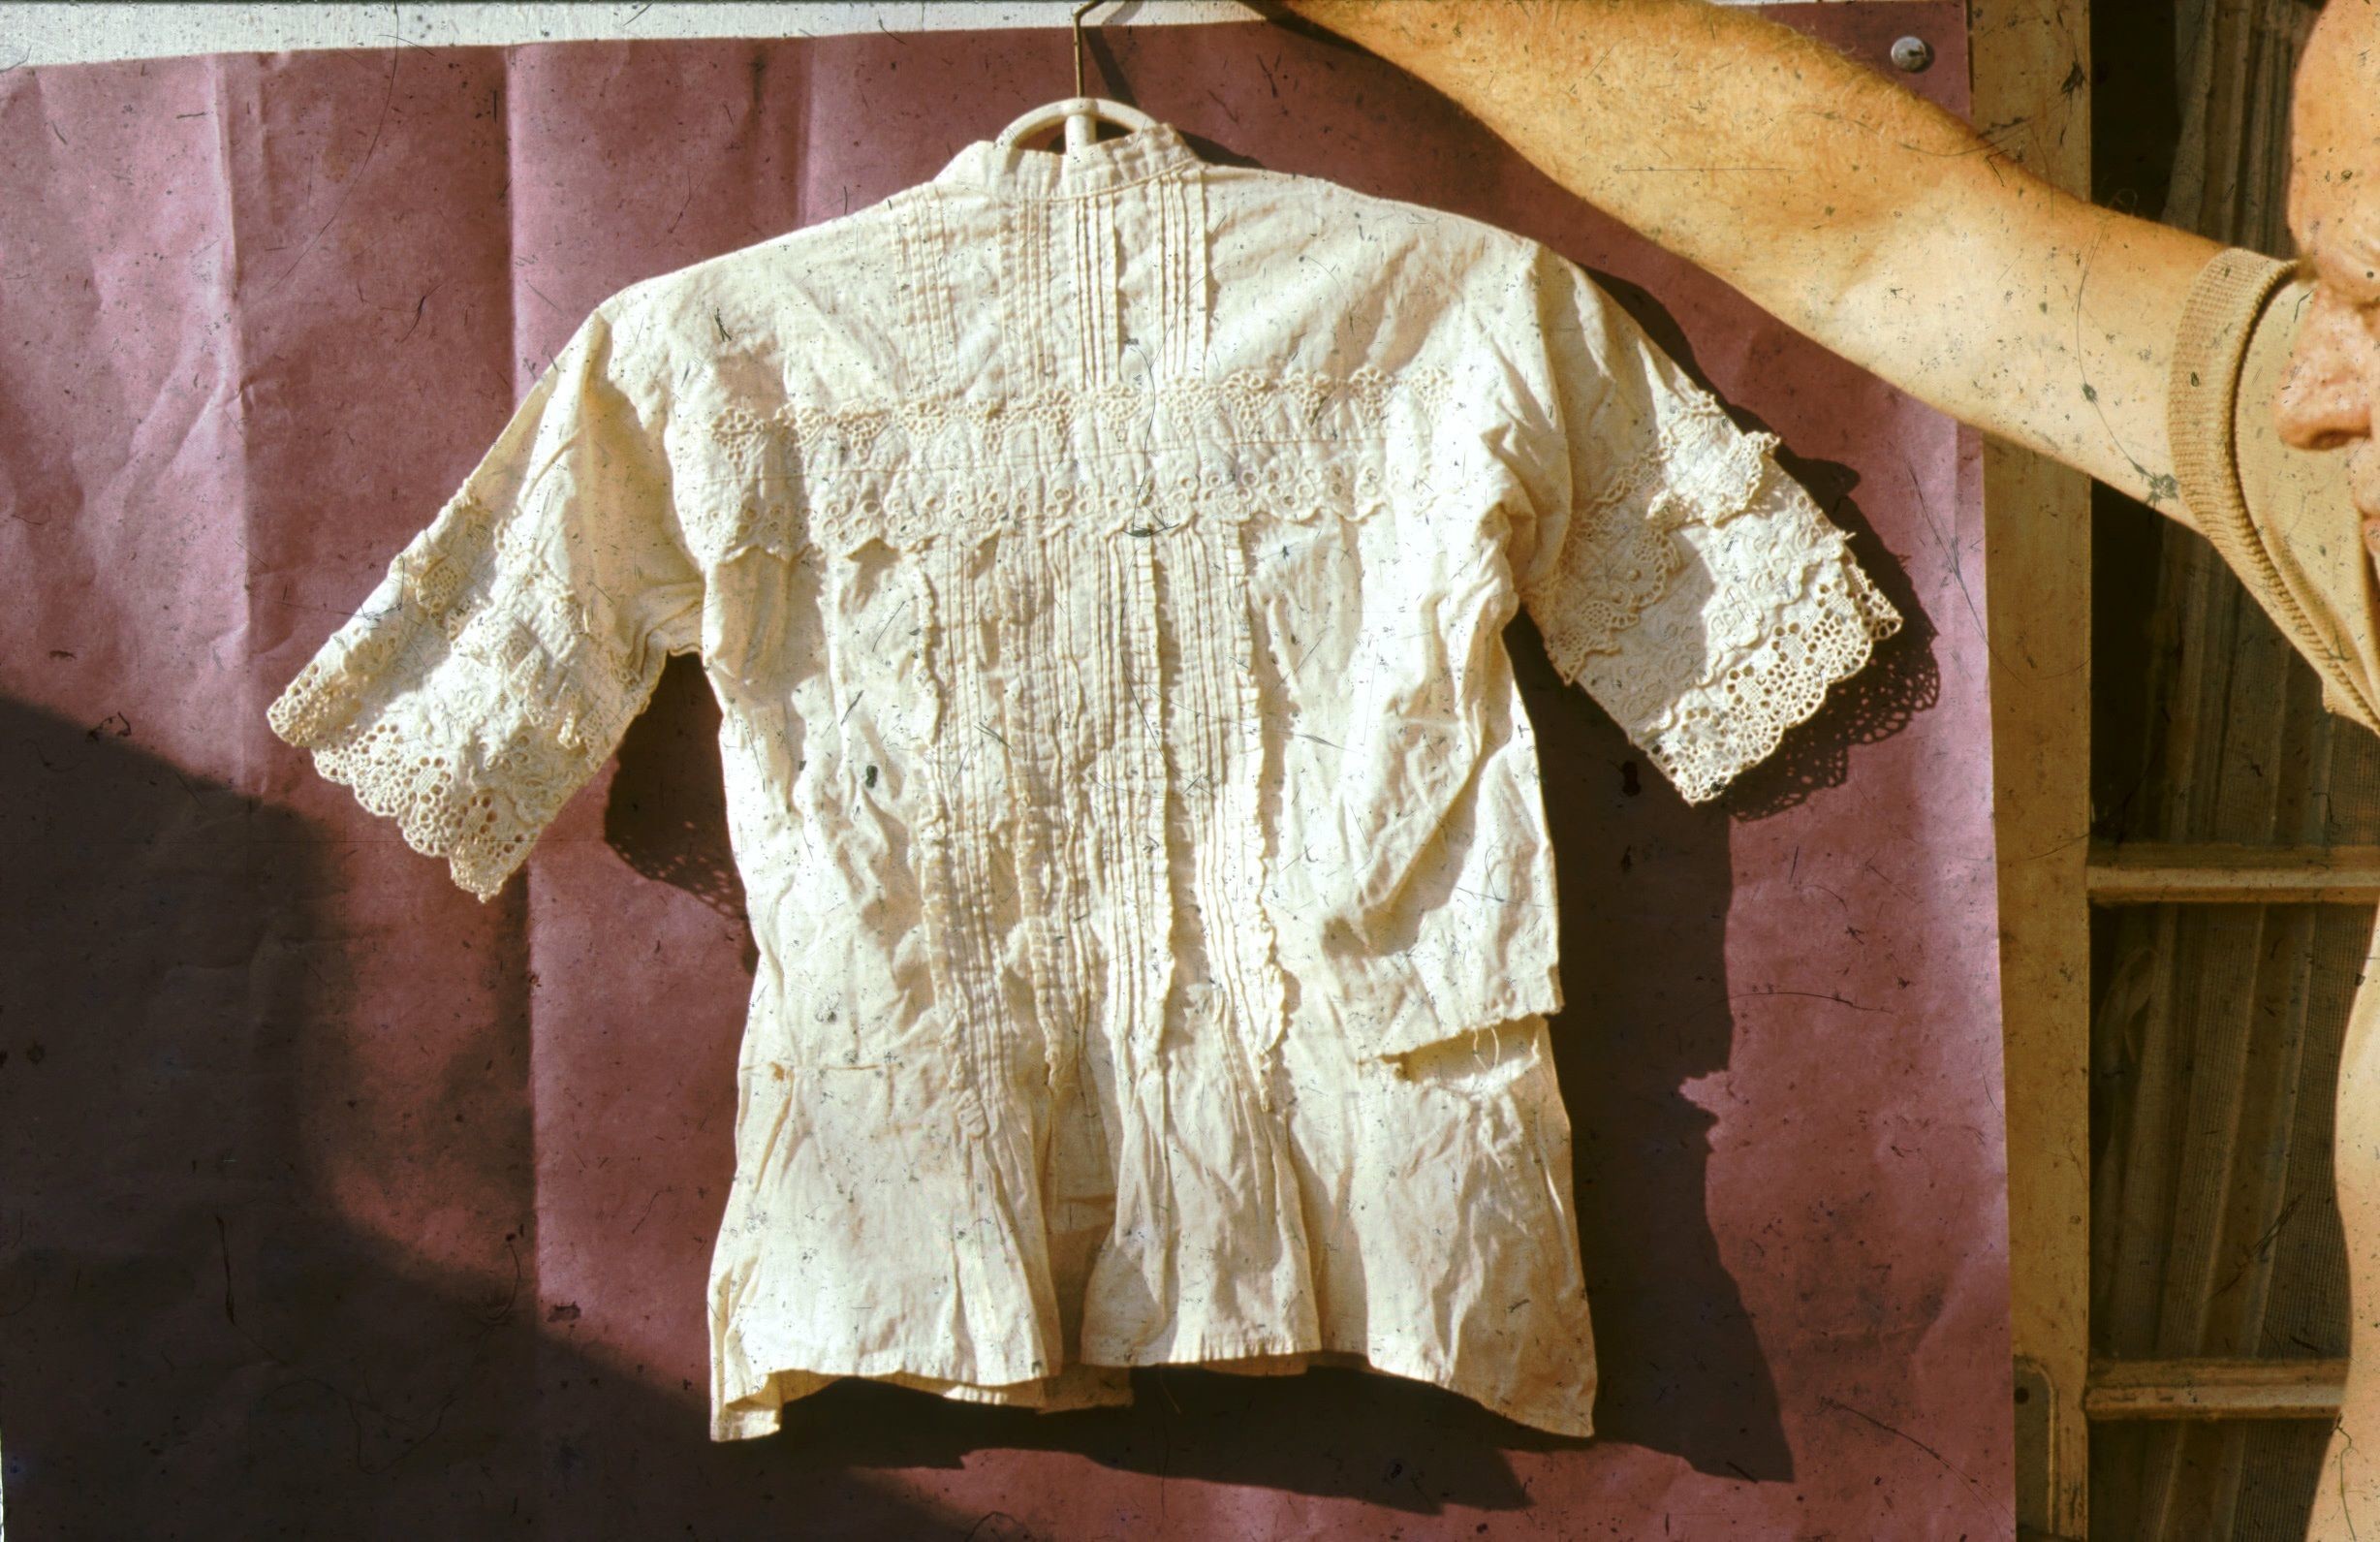 Törökkopányi fehérhímzéses női ing hátulról (Rippl-Rónai Múzeum CC BY-NC-ND)